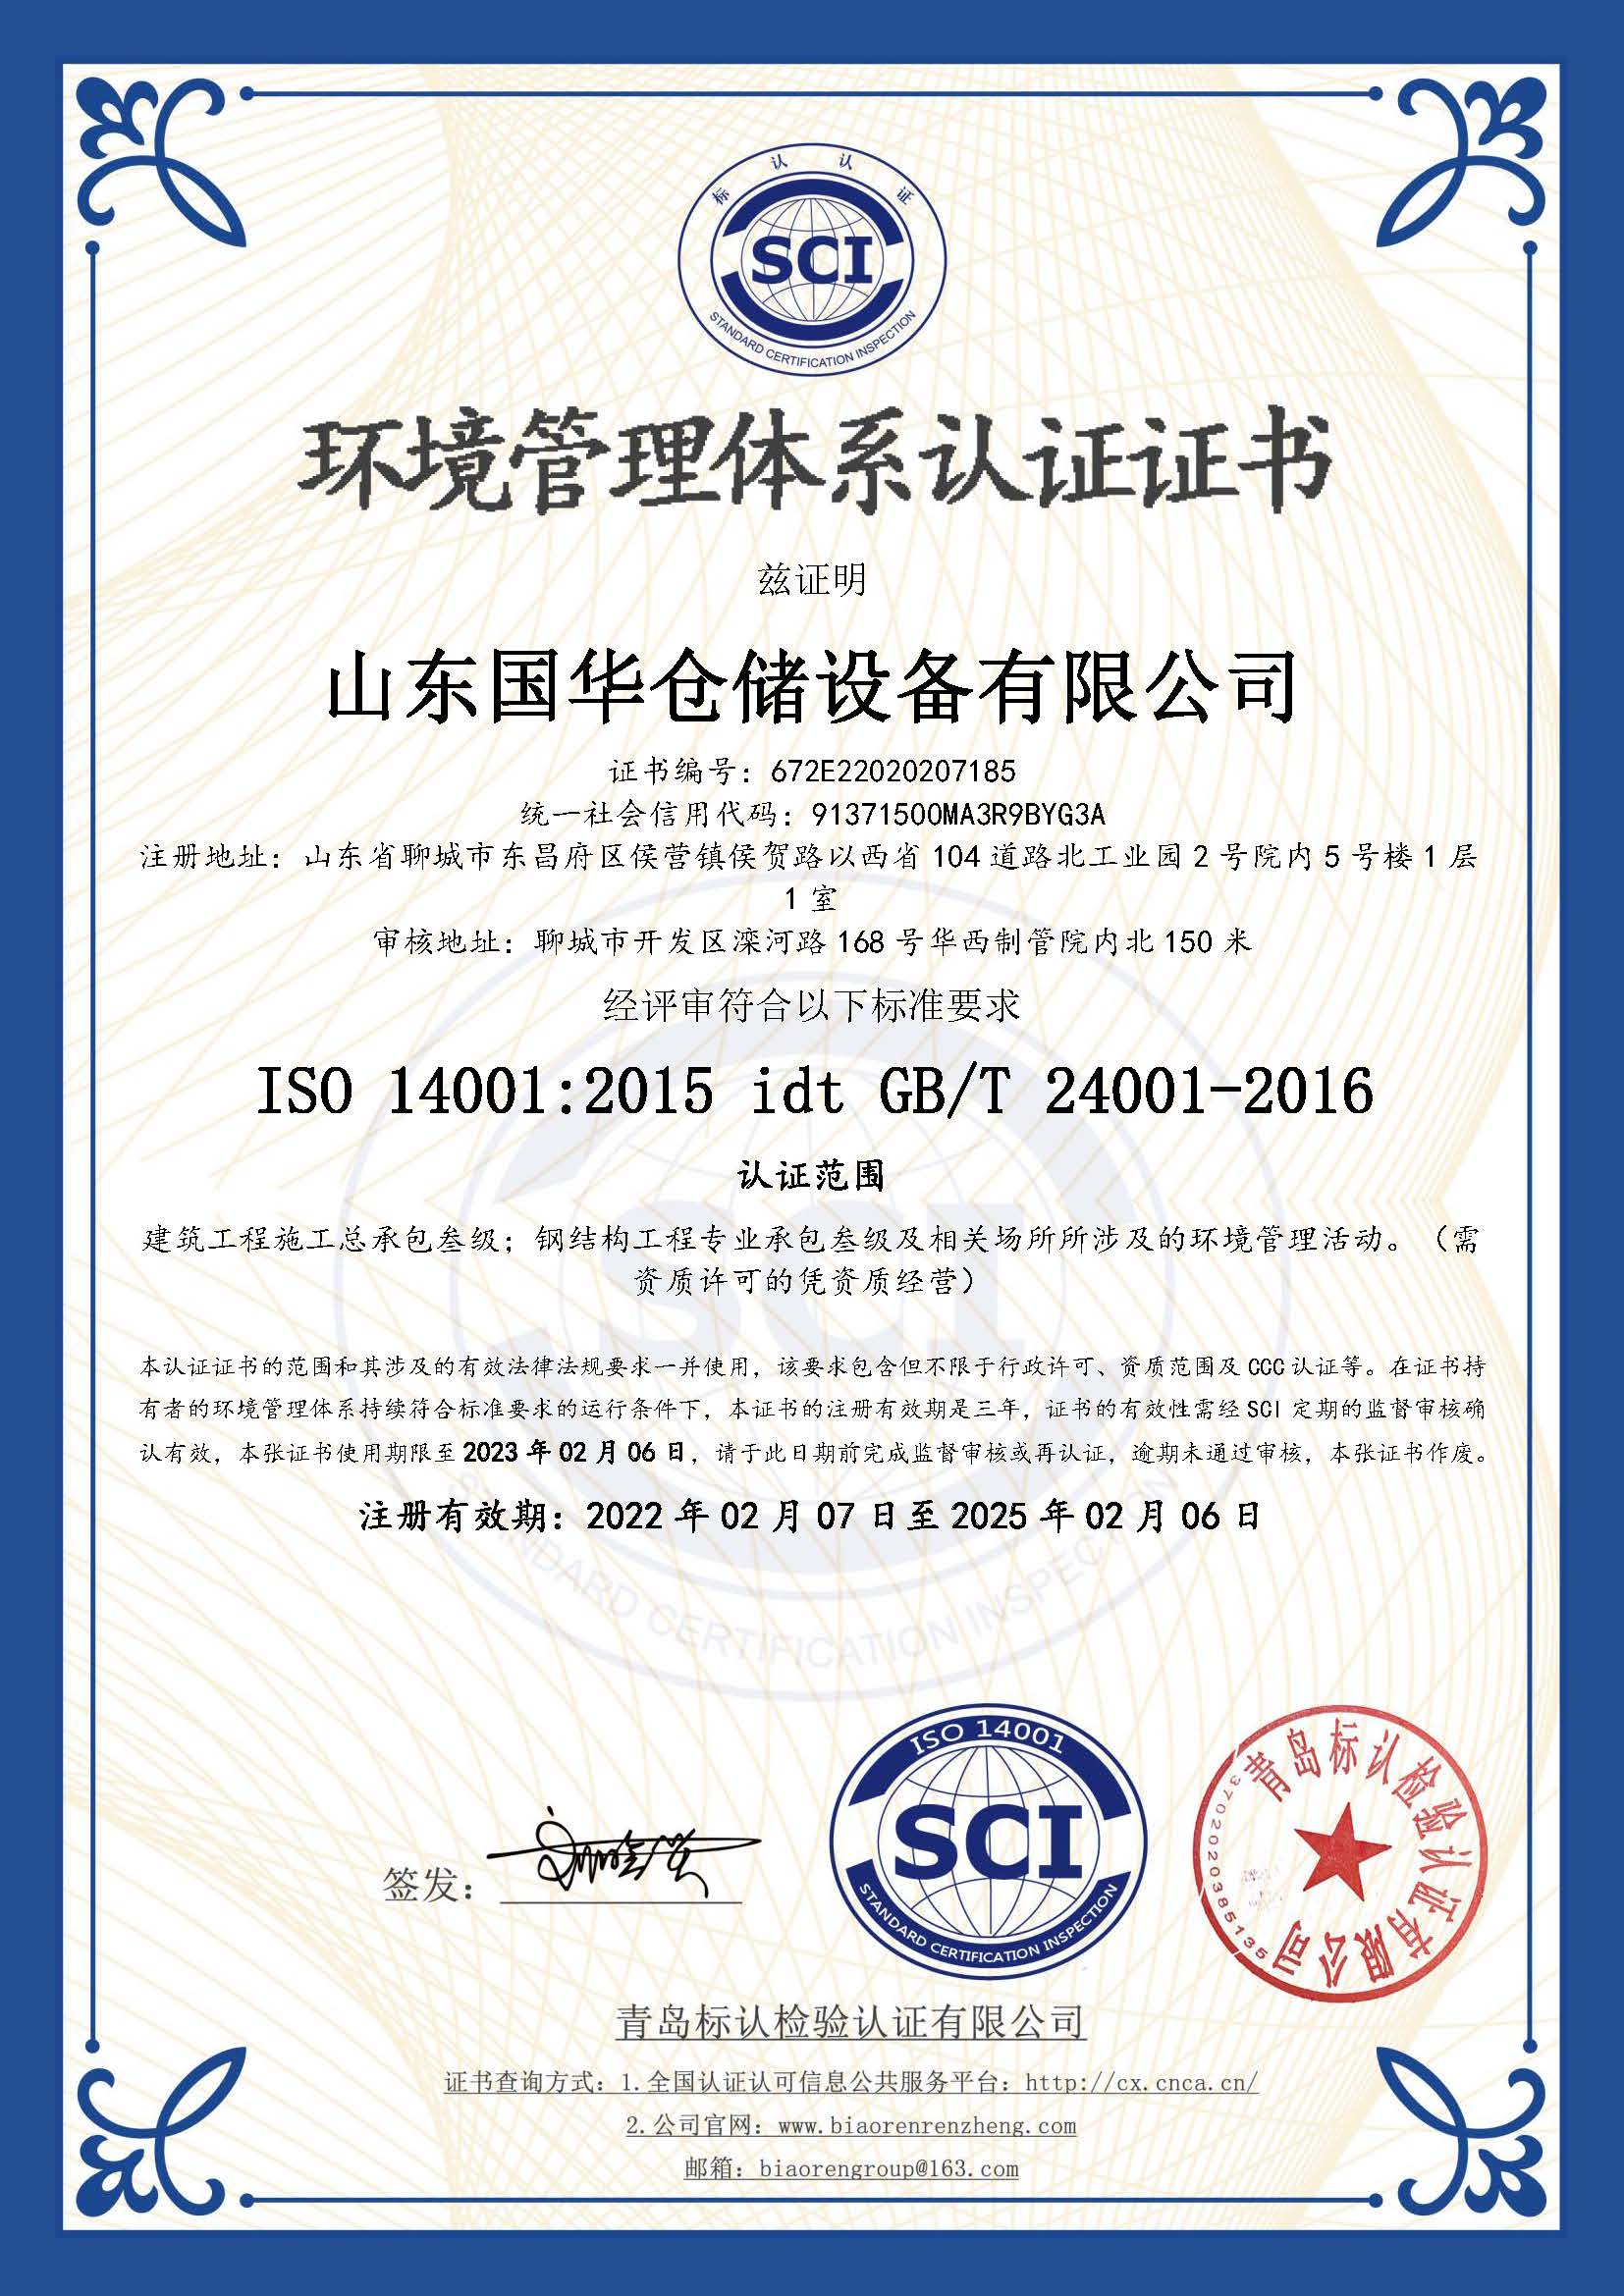 石家庄钢板仓环境管理体系认证证书